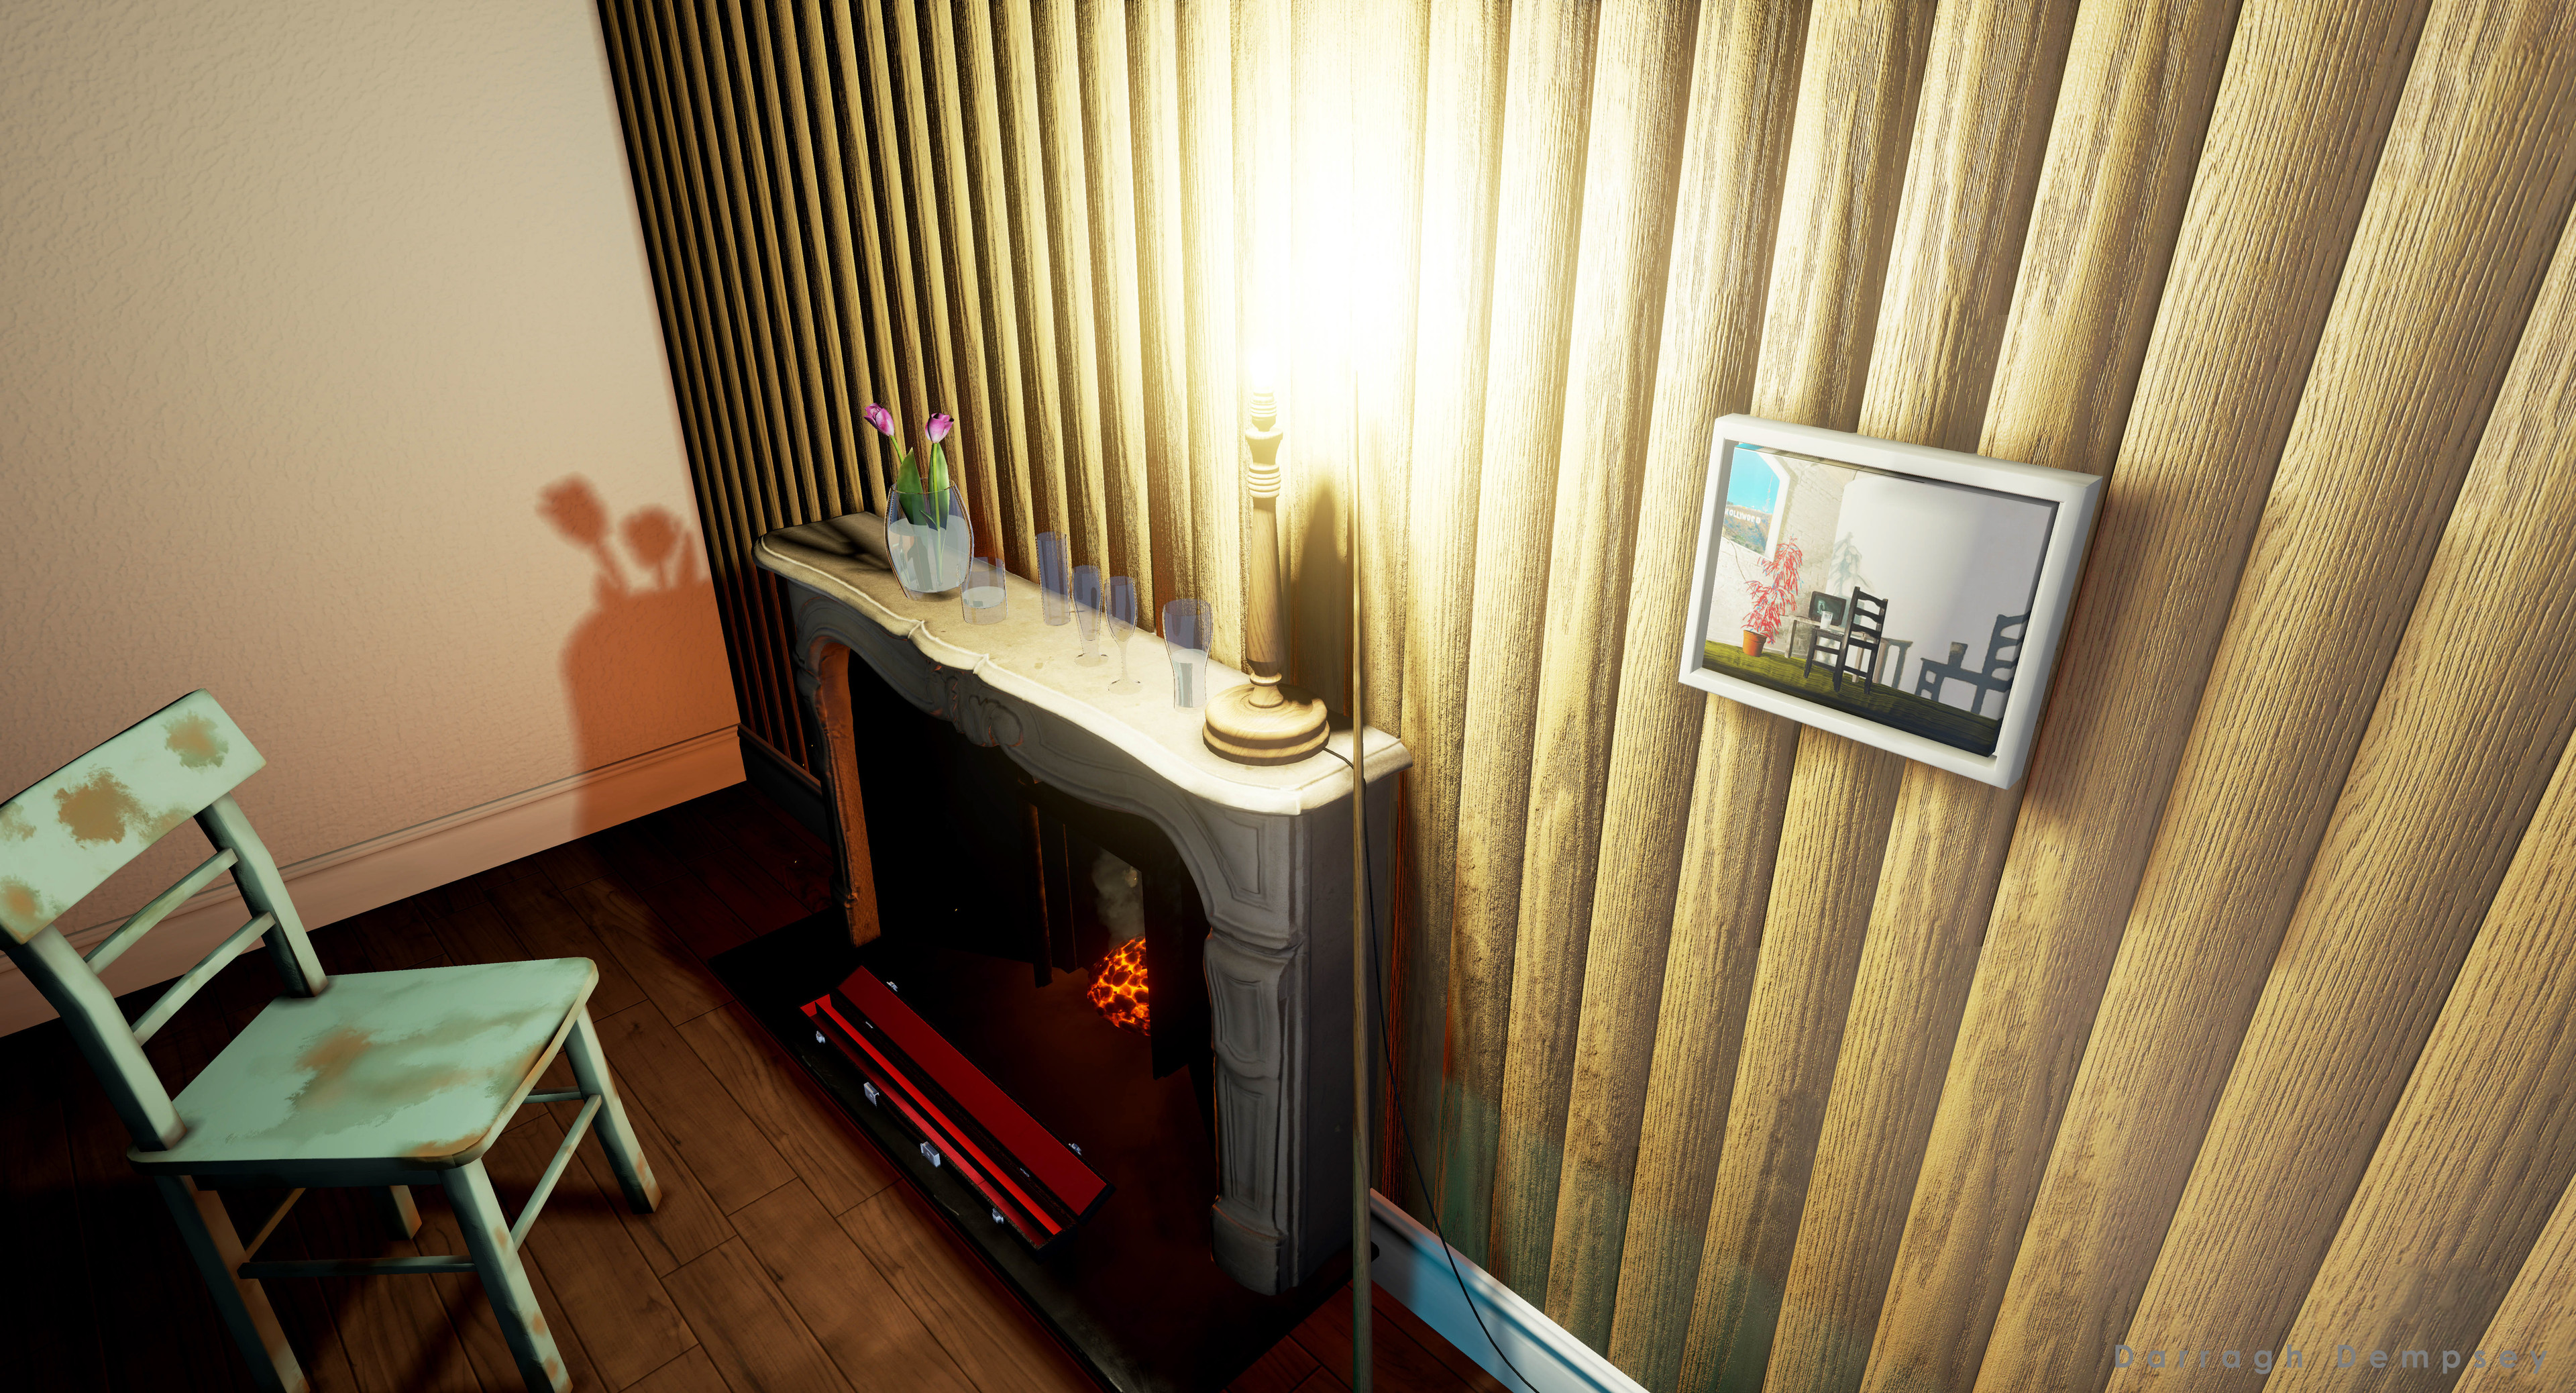 'A Hidden Narrative' Unreal Engine screenshot